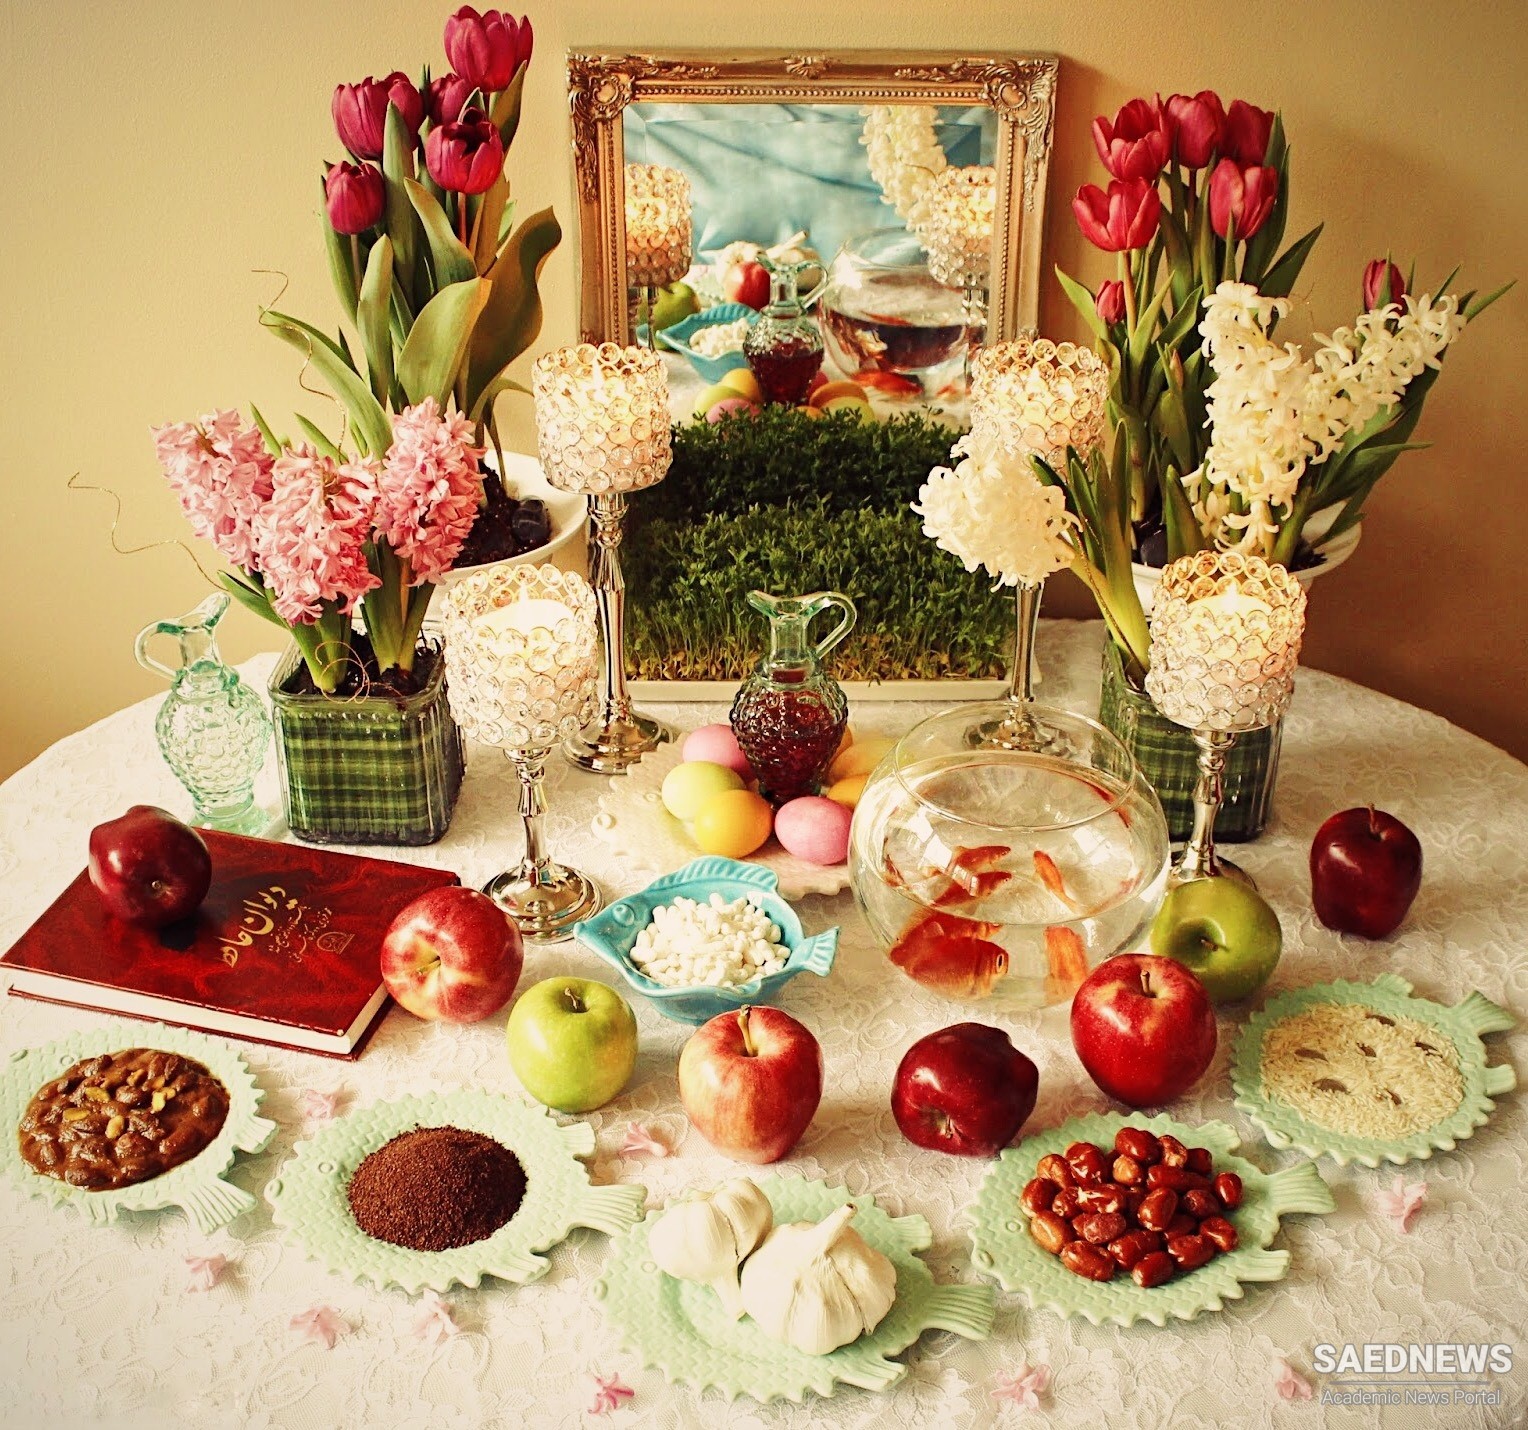 सोफ्रे हैफ्ट सिन: ईरान में नए साल की सुंदरता और नवरोज़ की प्रतीकात्मक मेज़